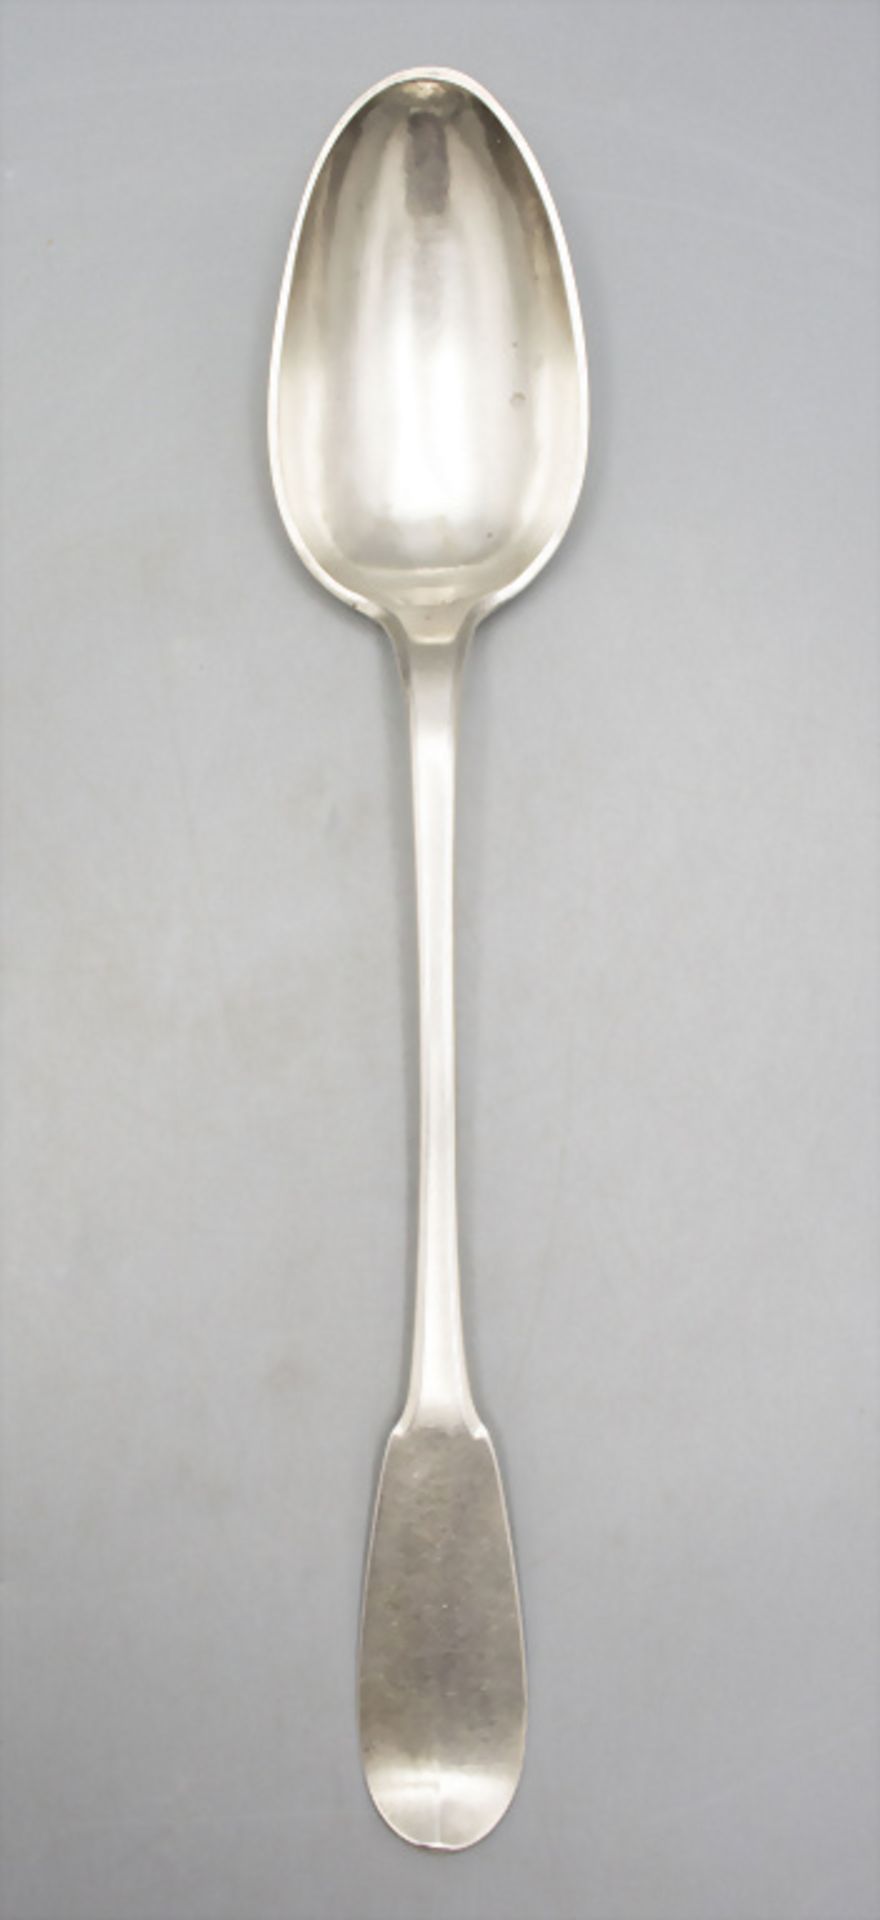 Ragout Löffel / Cuillère à ragout en argent massif / A large silver serving spoon, J. Reynaud, ...